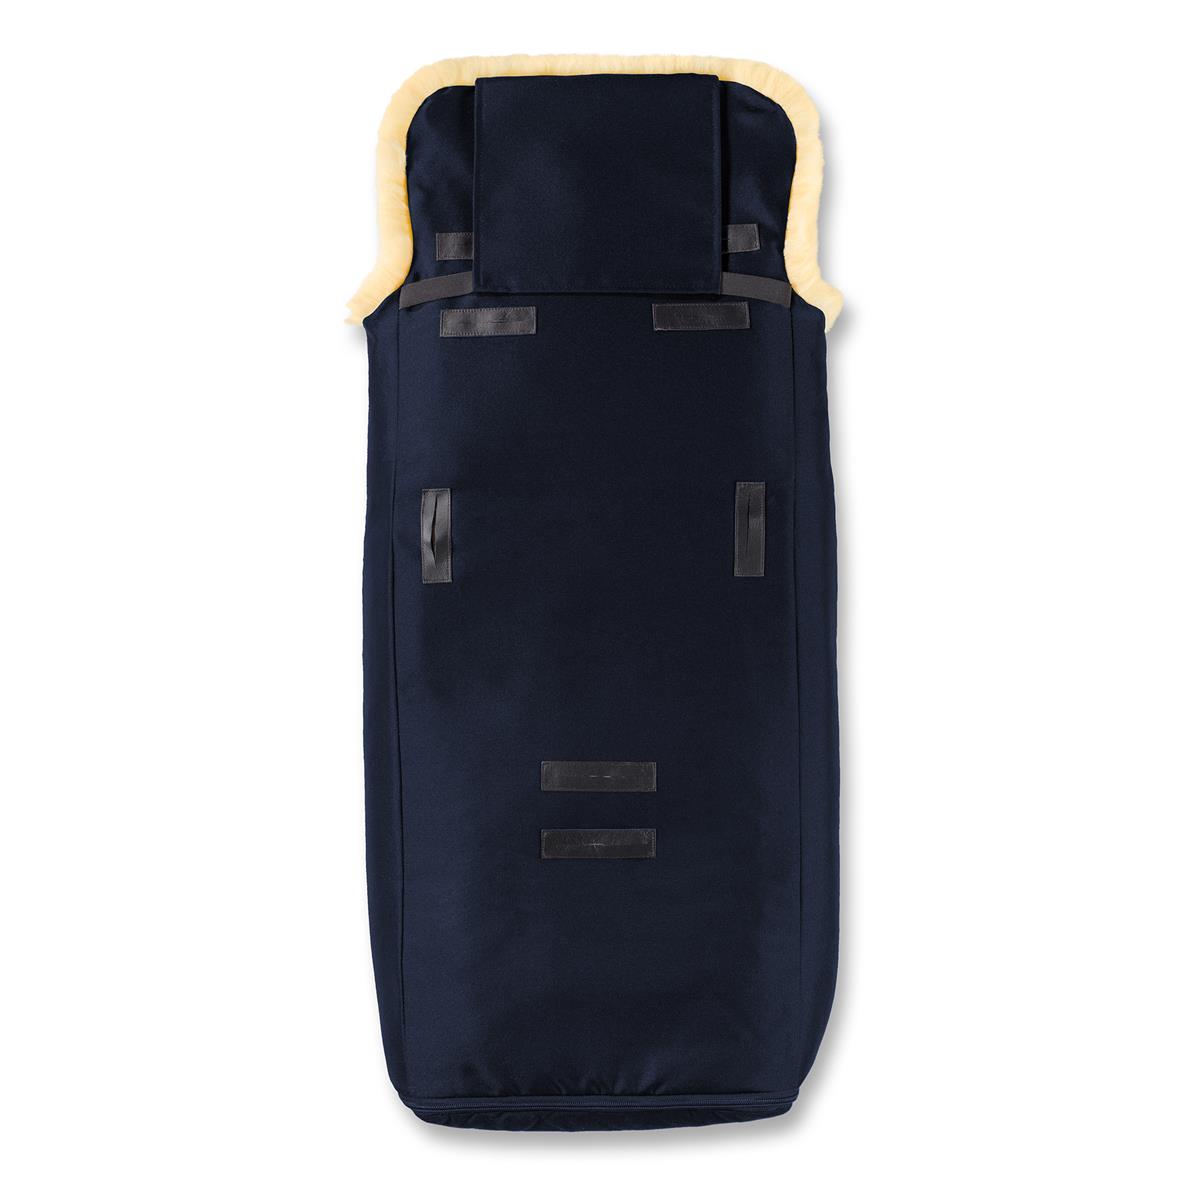 LUXUS Limited Edition - Neues Design für den Nostalgischen Lammfell Fußsack - Navy-blue